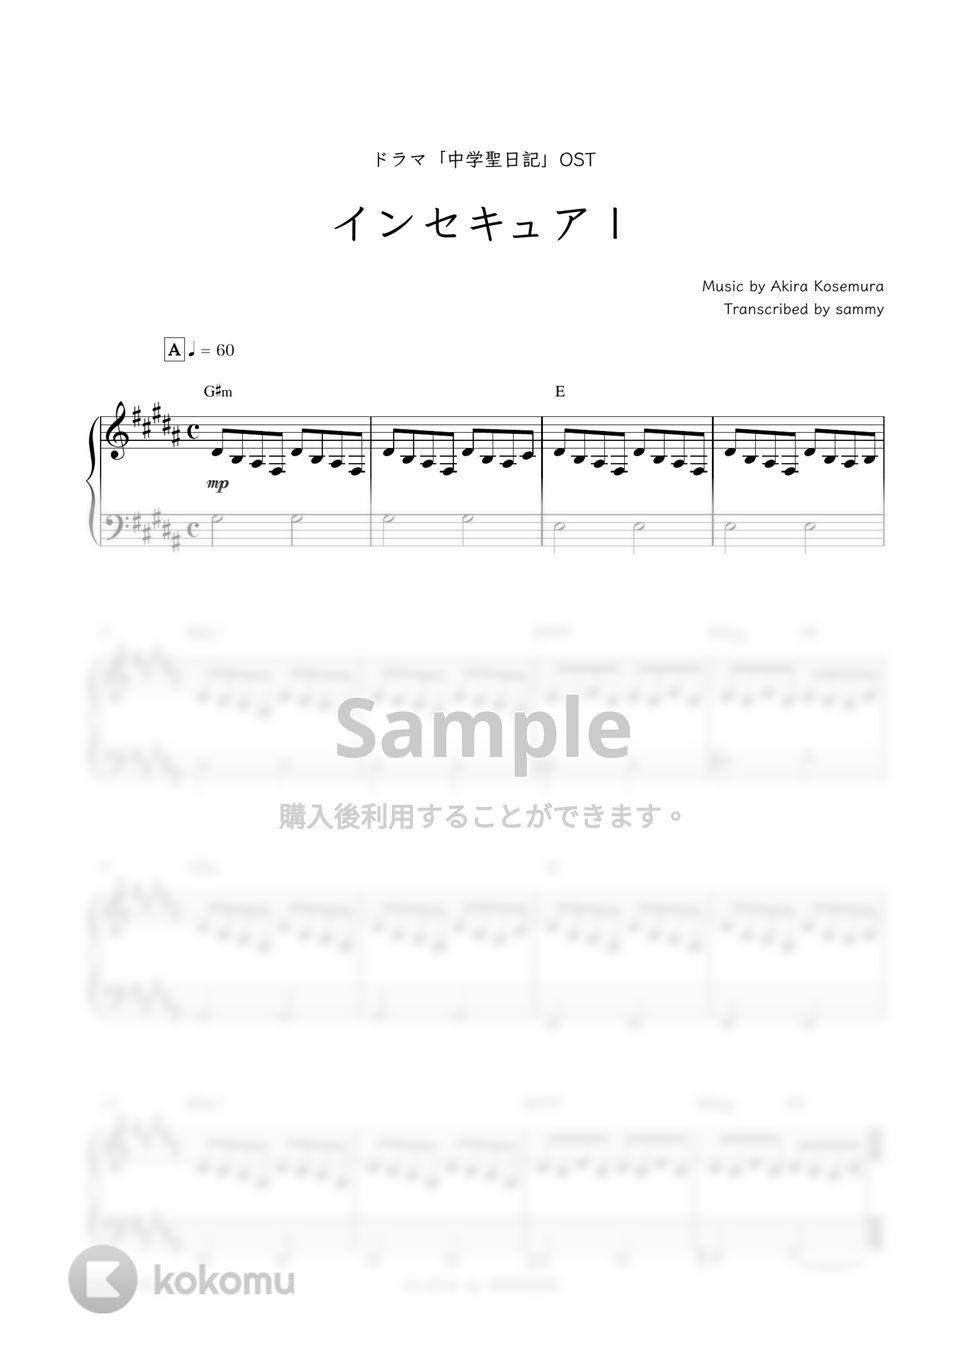 ドラマ『中学聖日記』OST - インセキュアI by sammy